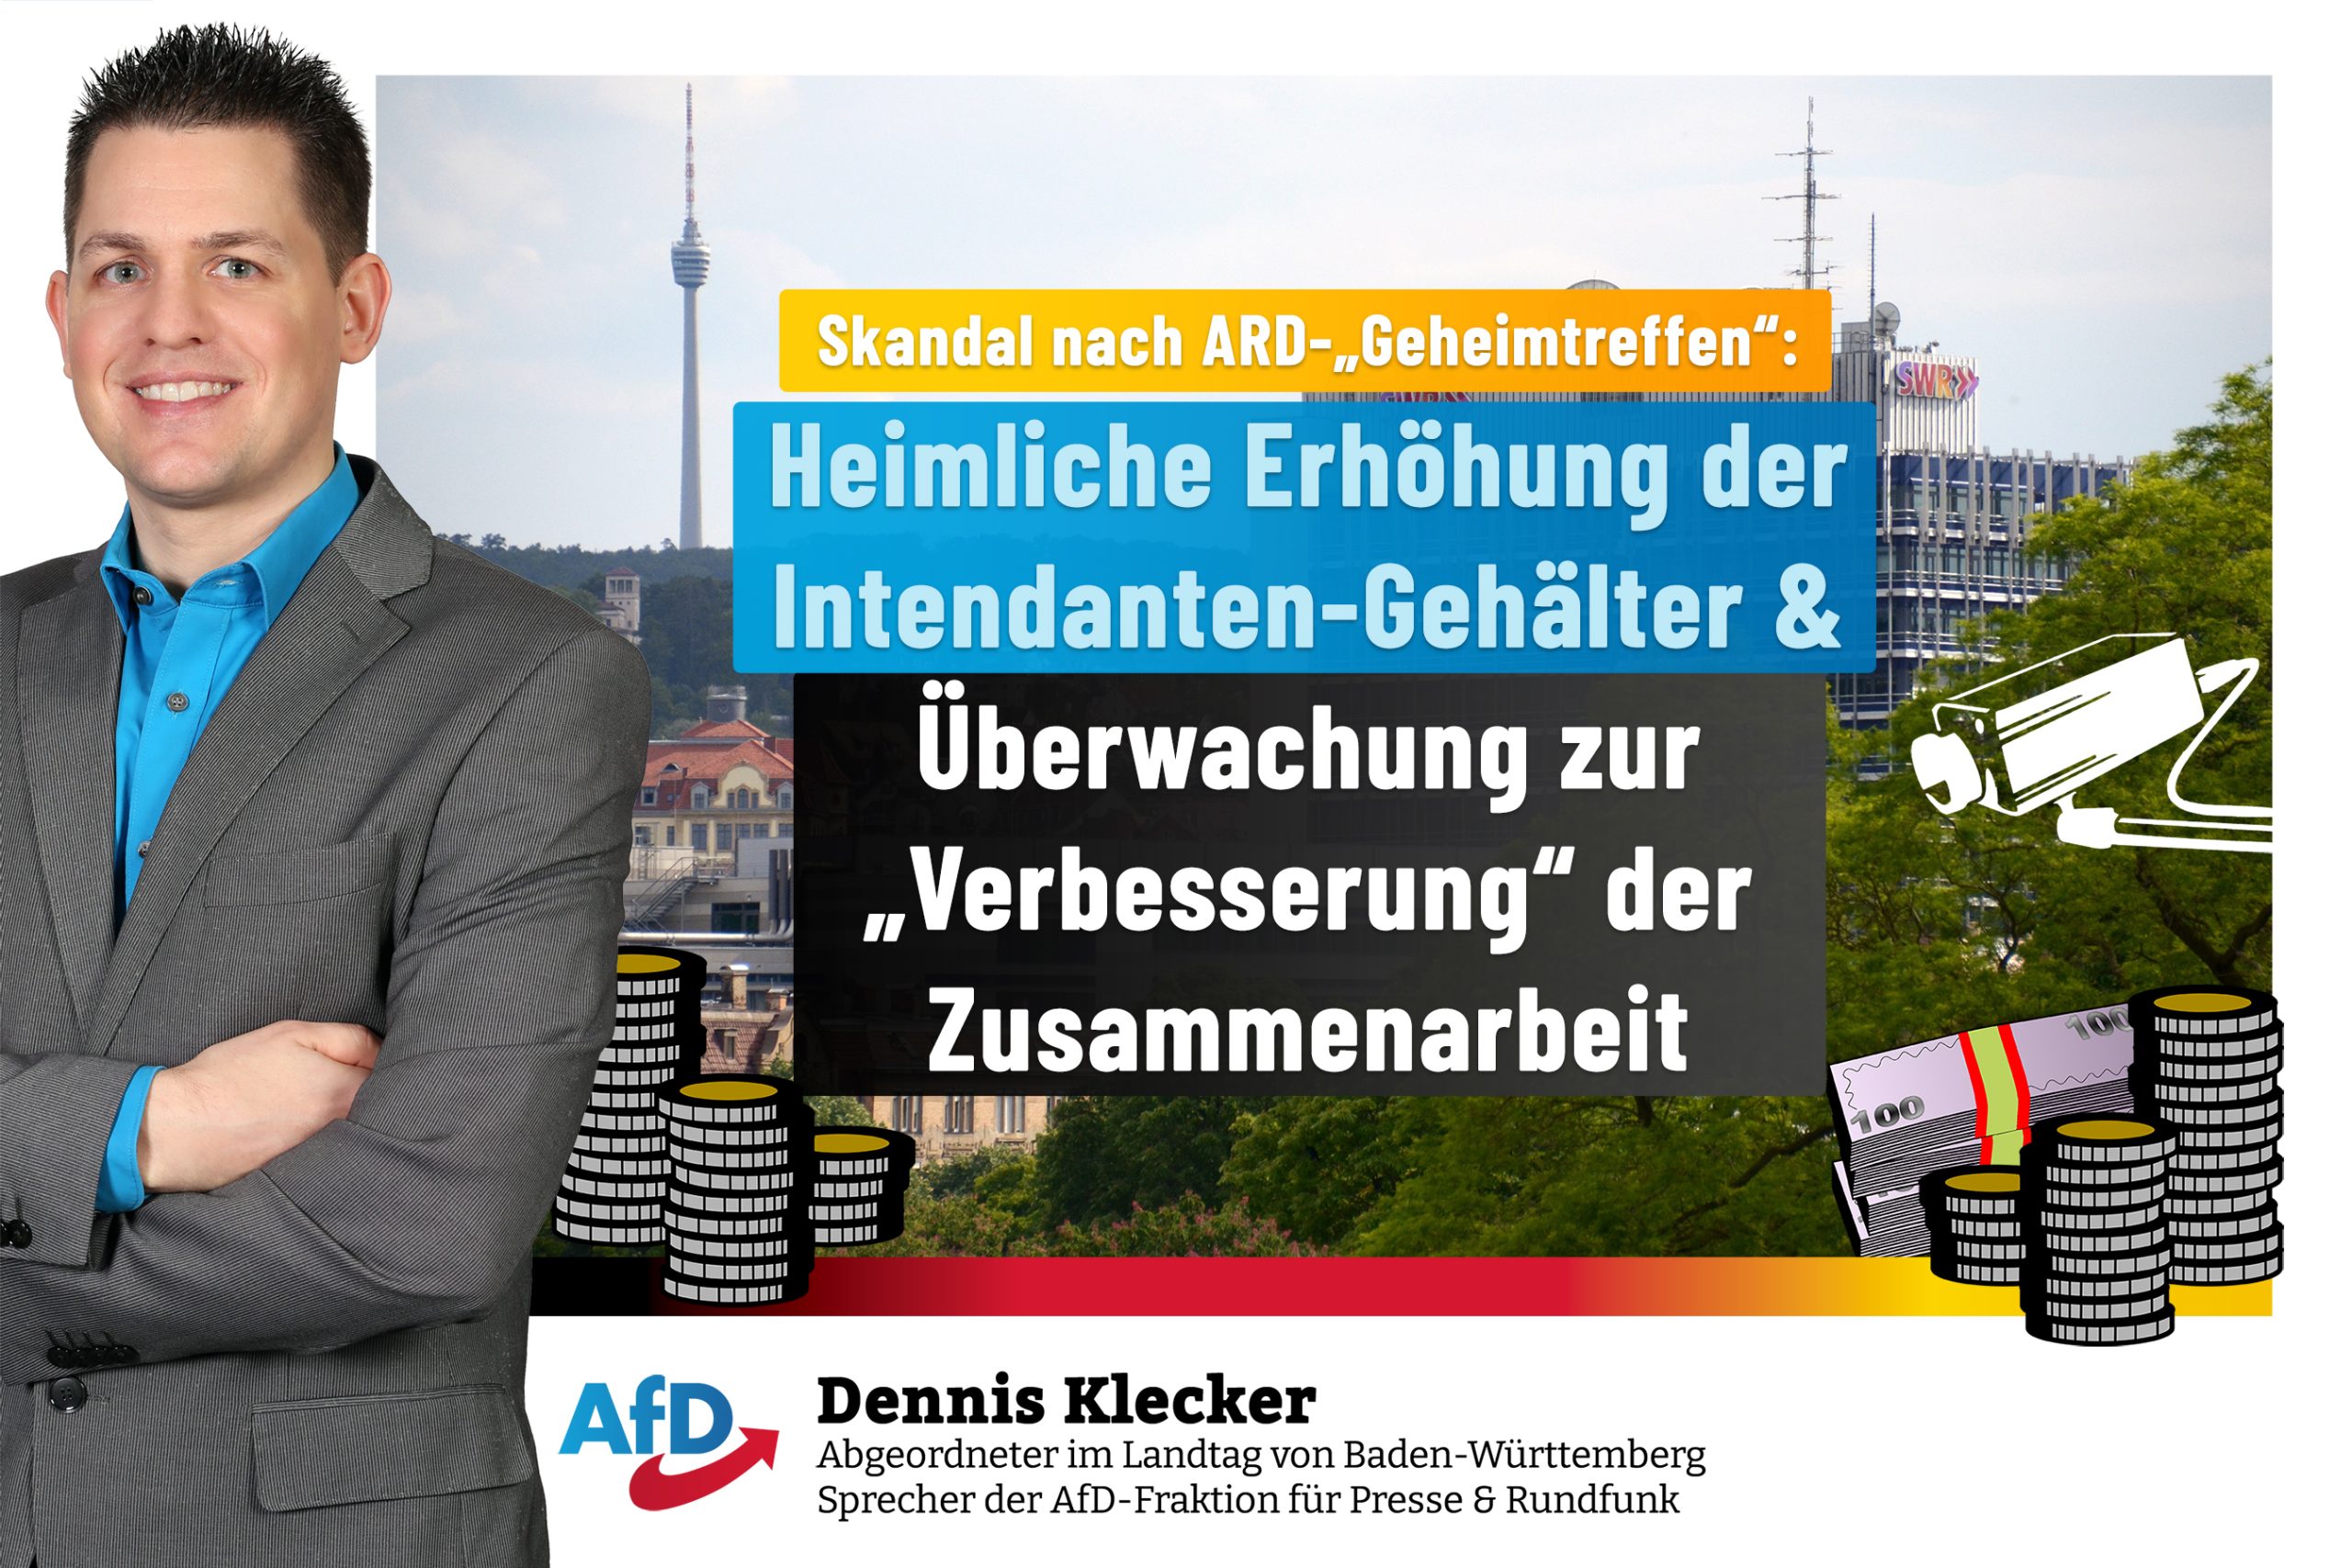 Dennis Klecker/Dr. Rainer Podeswa: Keine Erhöhung der Intendanten-Gehälter!